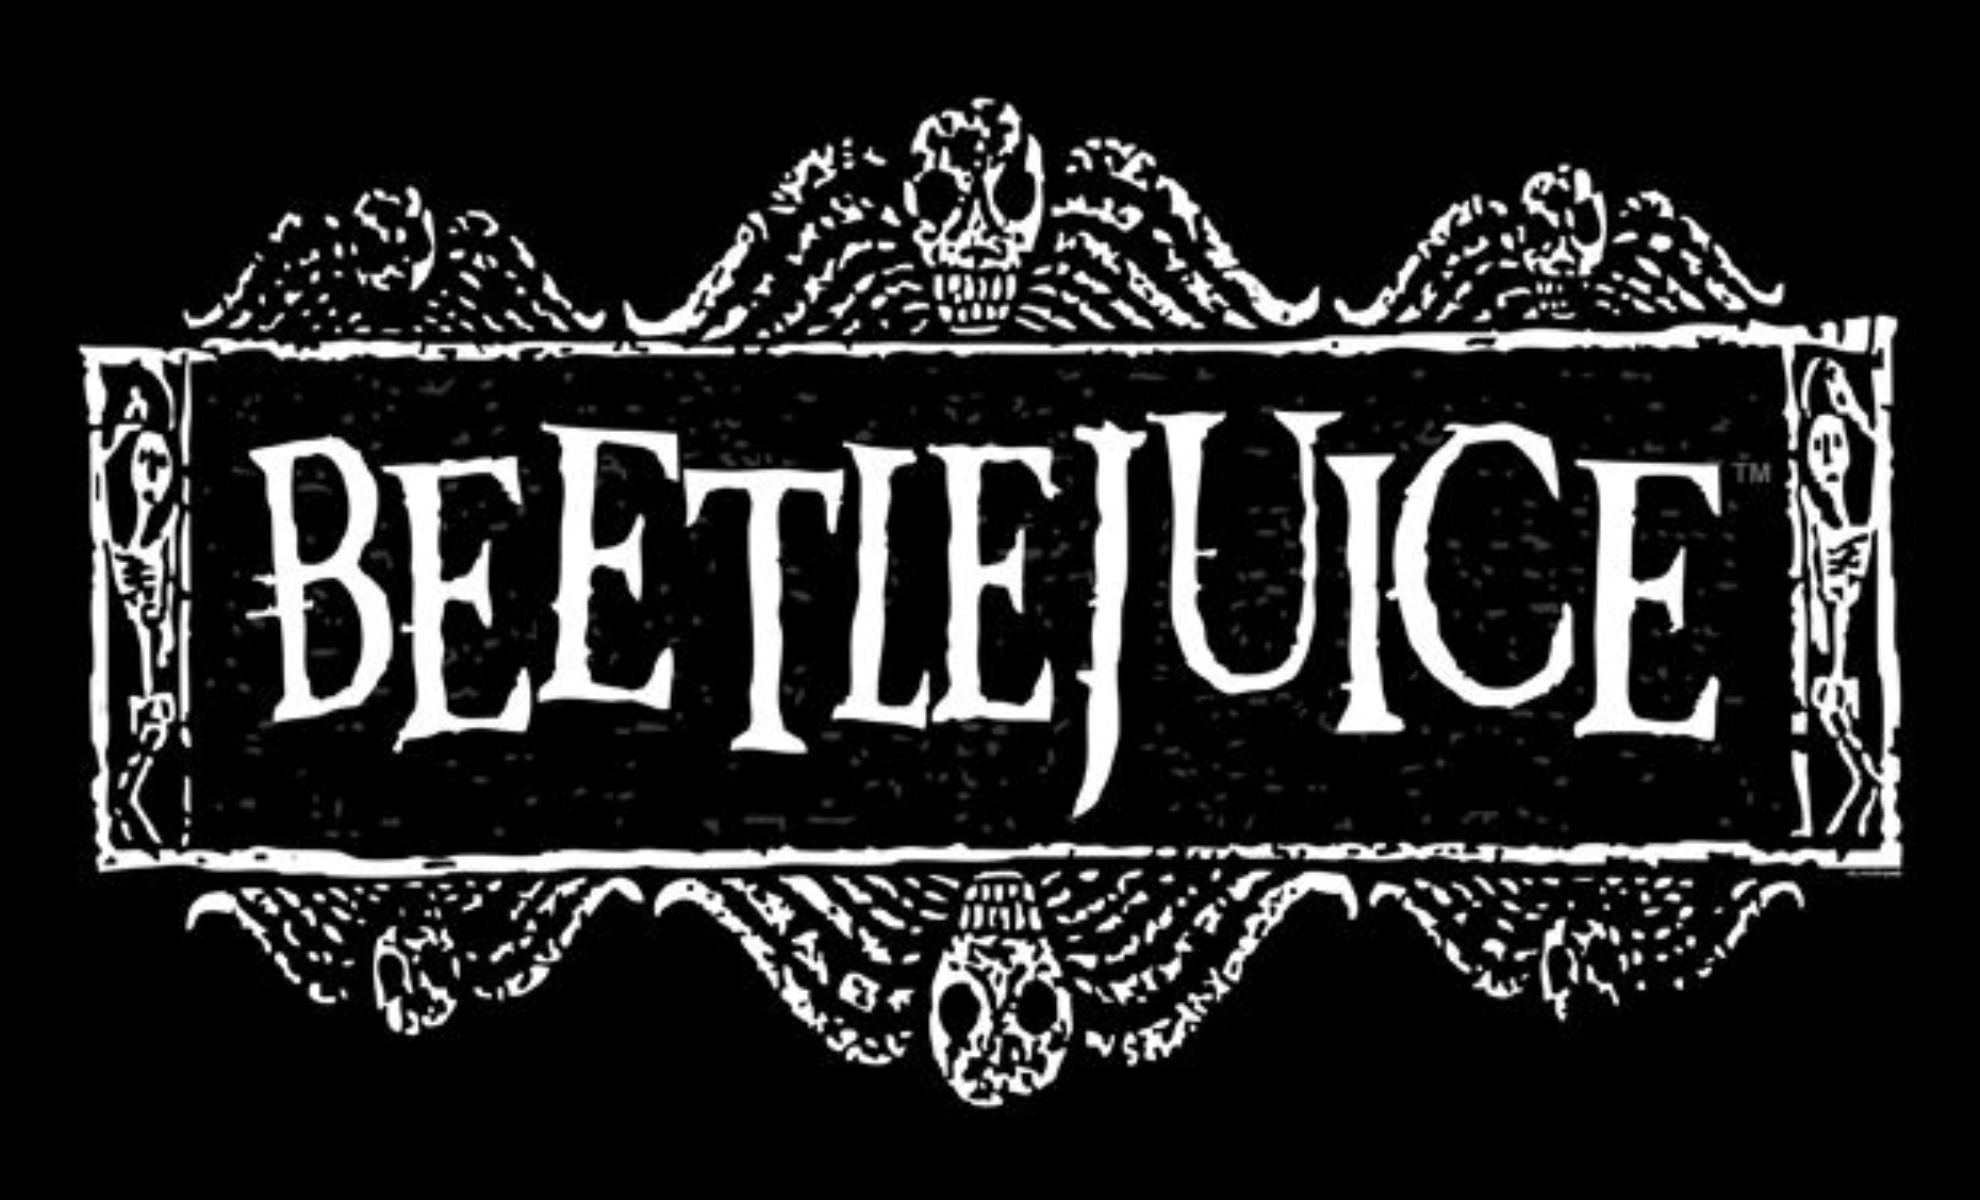 Beetlejuice 2 en tournage les premiers clichés dévoilés !